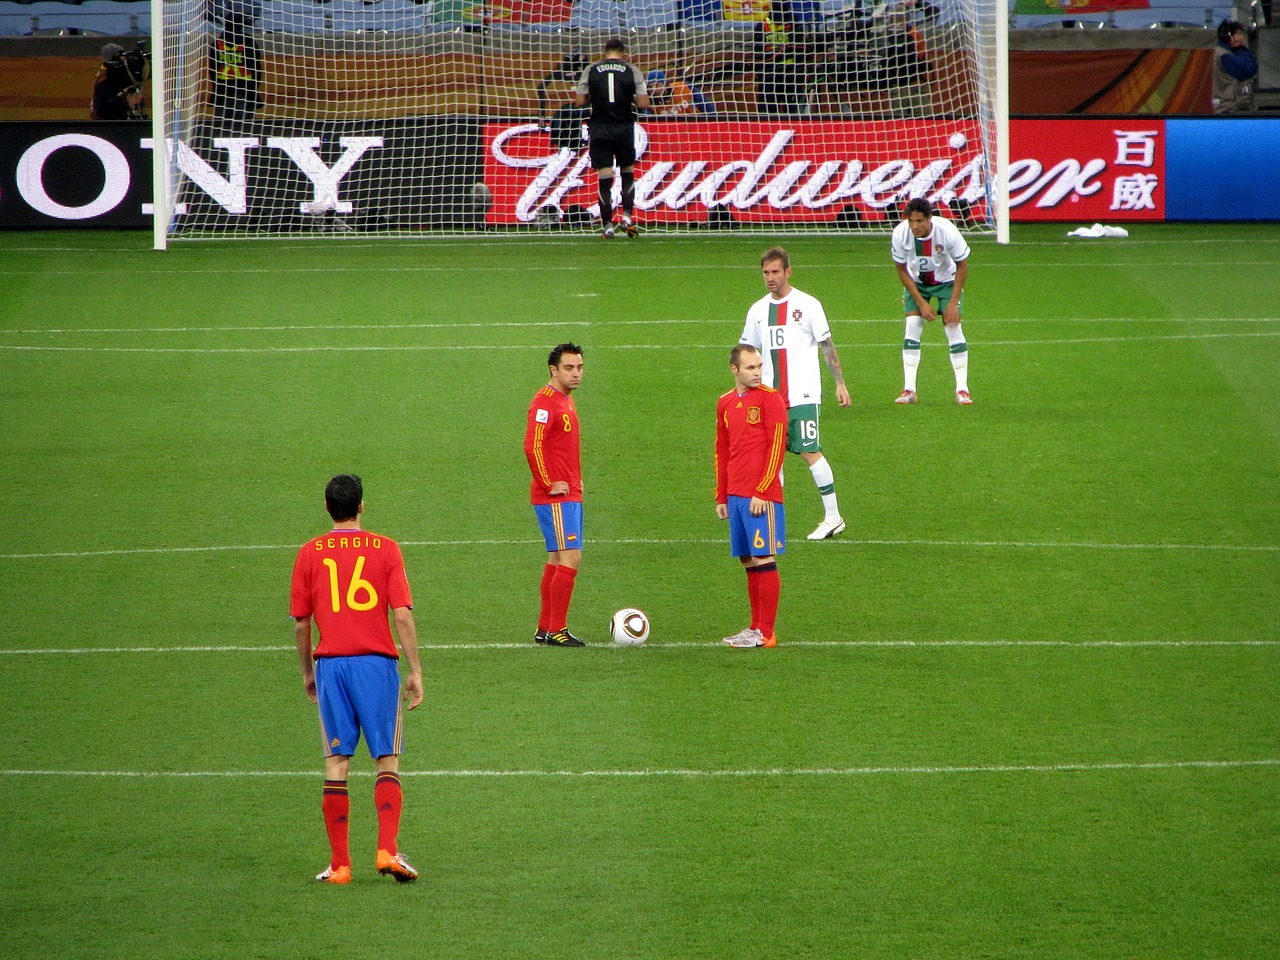 Pasaulio Čempionatas 2010, Ispanija, Portugal, Iniesta, Xavi, Futbolas, Futbolas, Fifa, Pietų Afrika, Cape Town